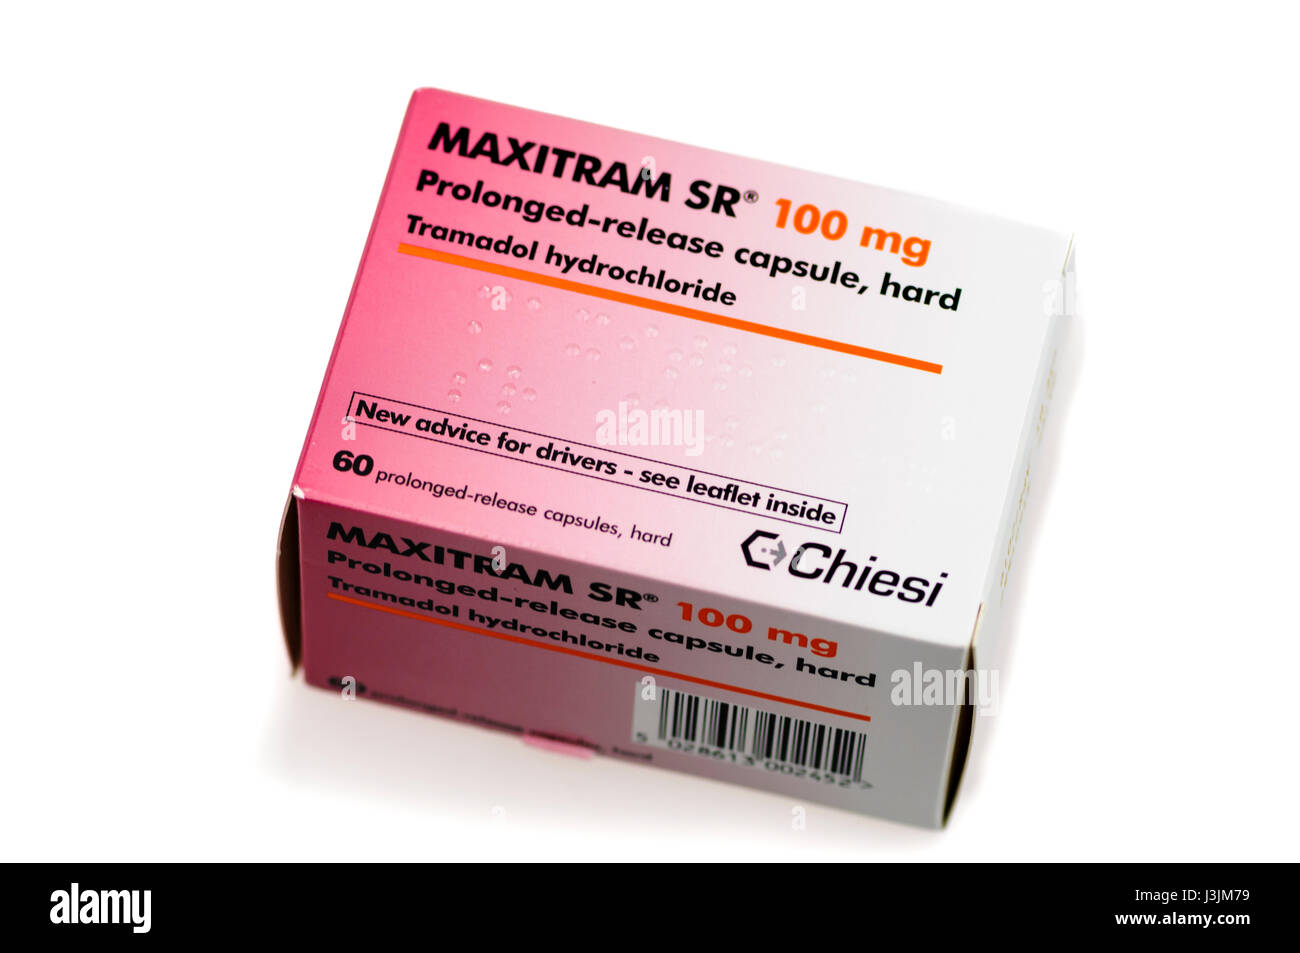 Scatola di Maxitram SR a lento rilascio) 100mg di tramadol cloridrato, un analgesico per il dolore da moderato a grave e spesso abusato come una droga ricreativa. Foto Stock